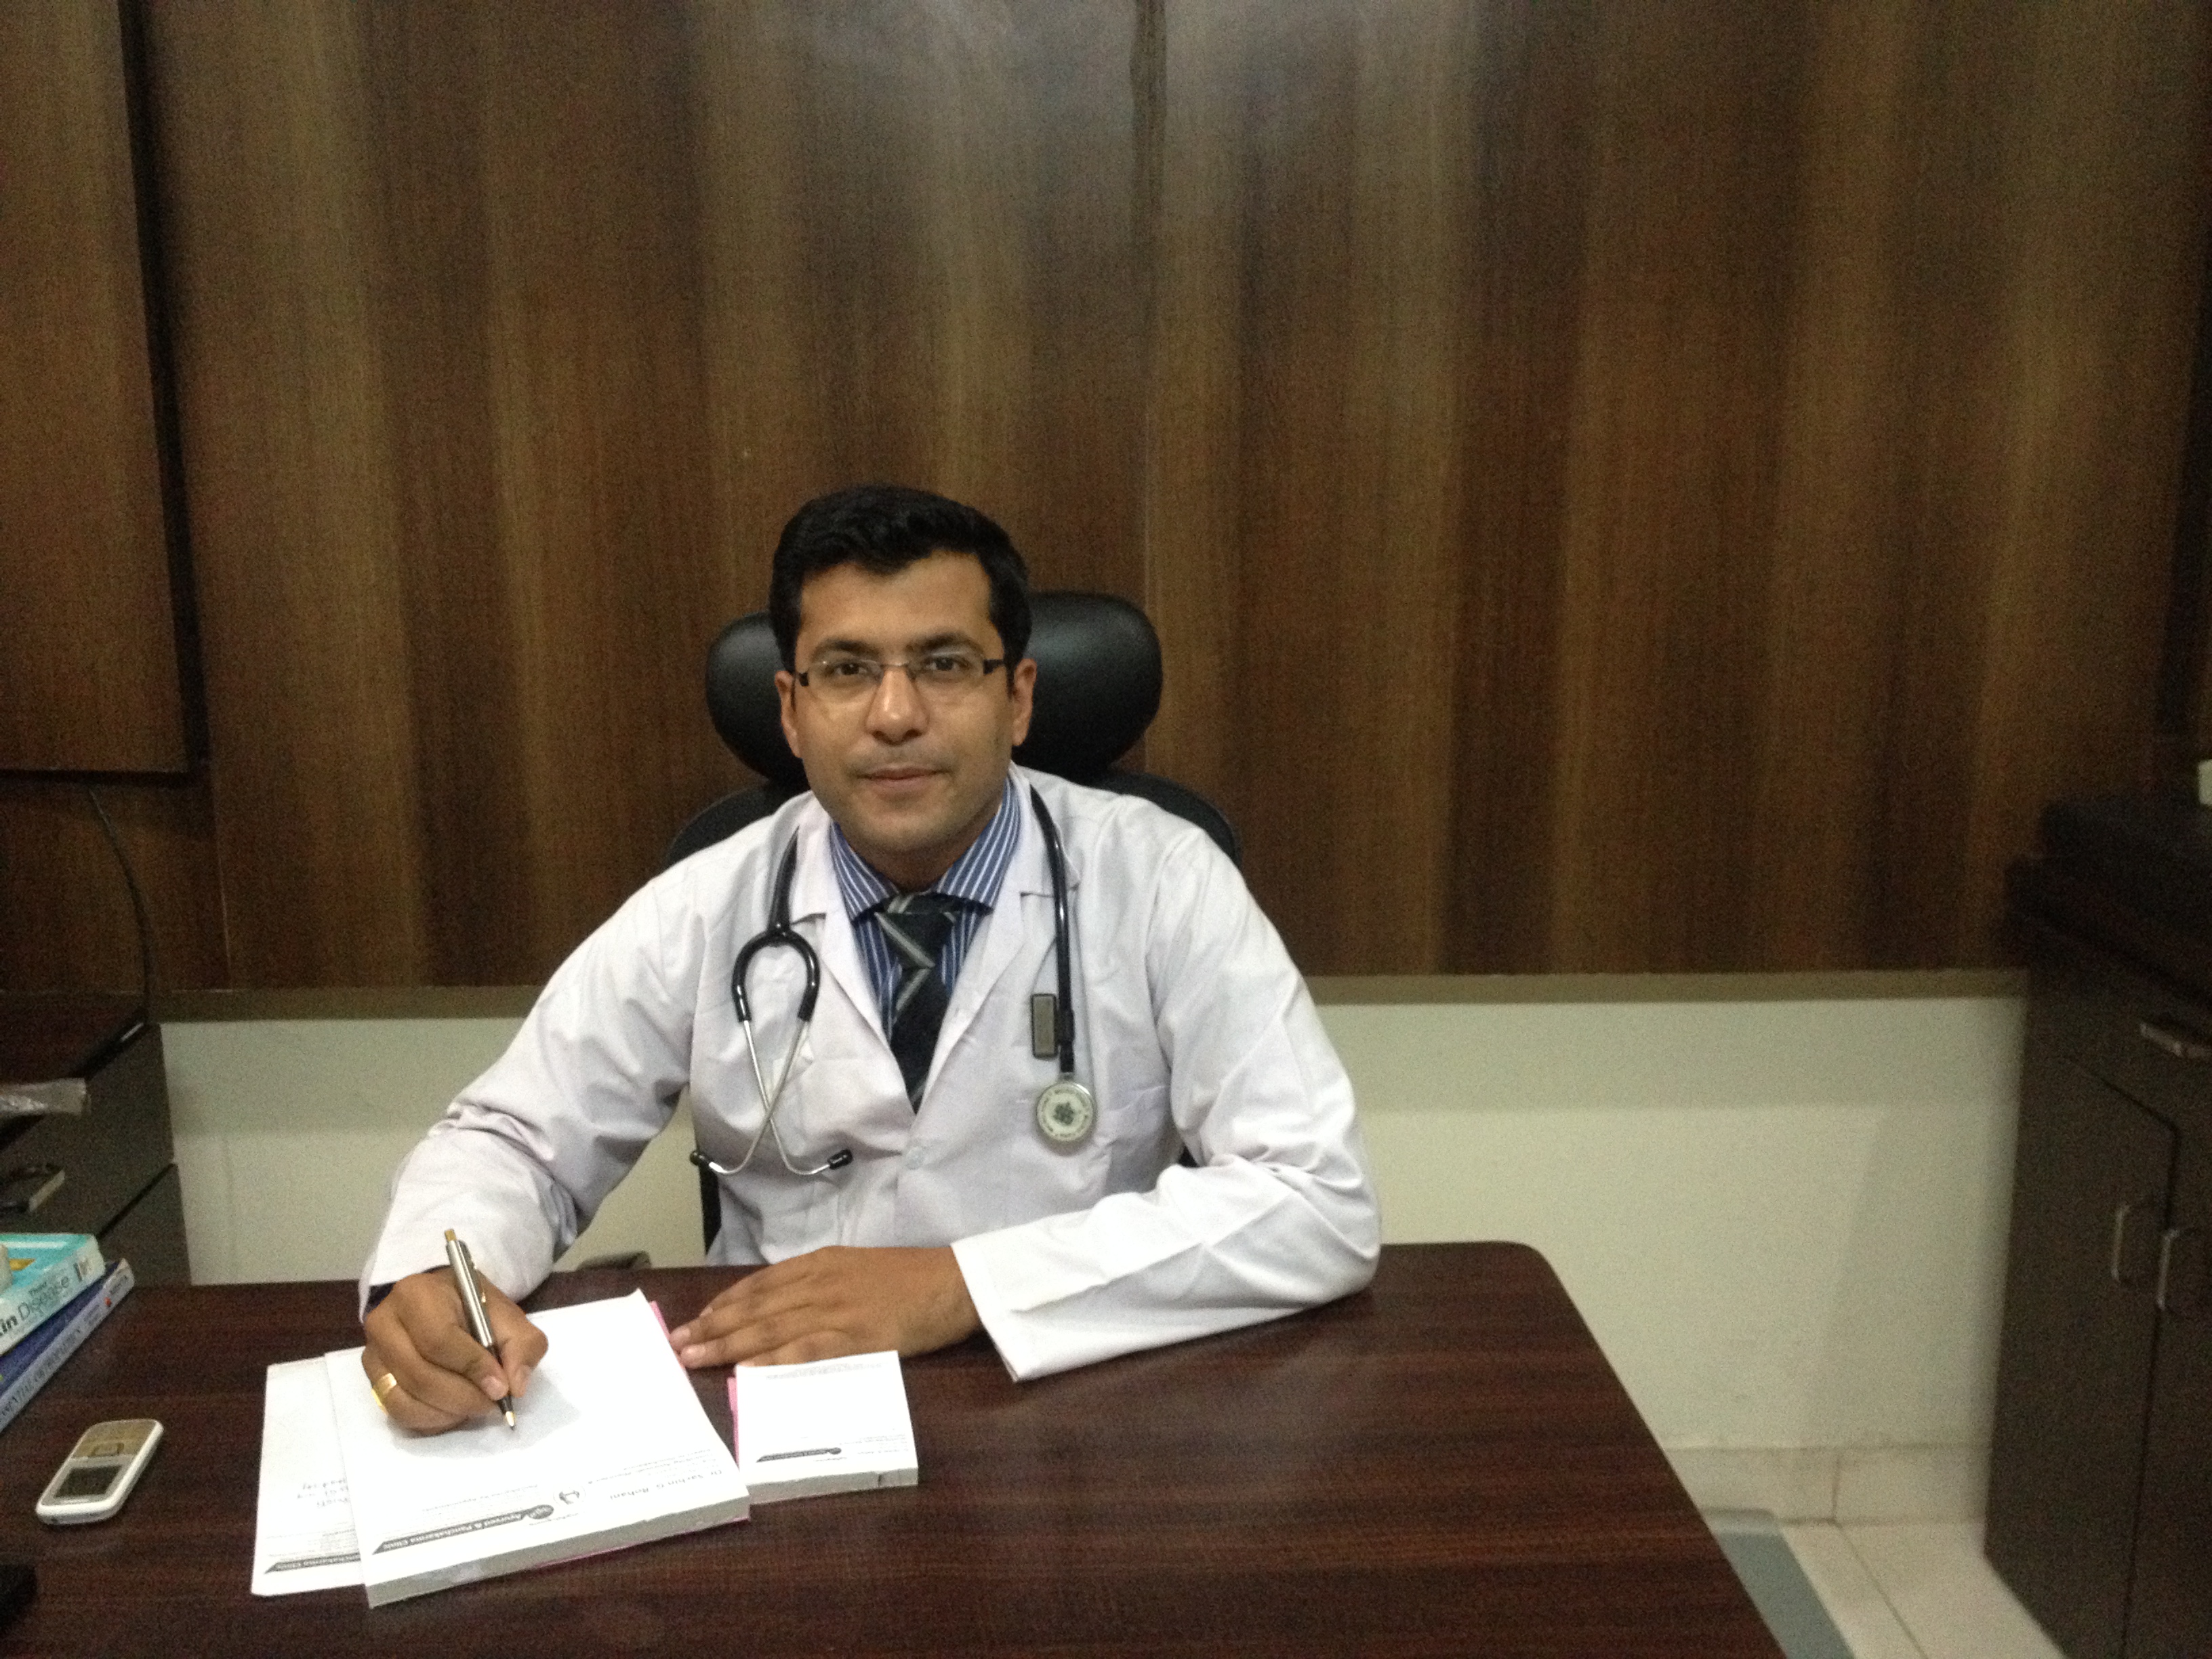 Dr. Sachin rohani